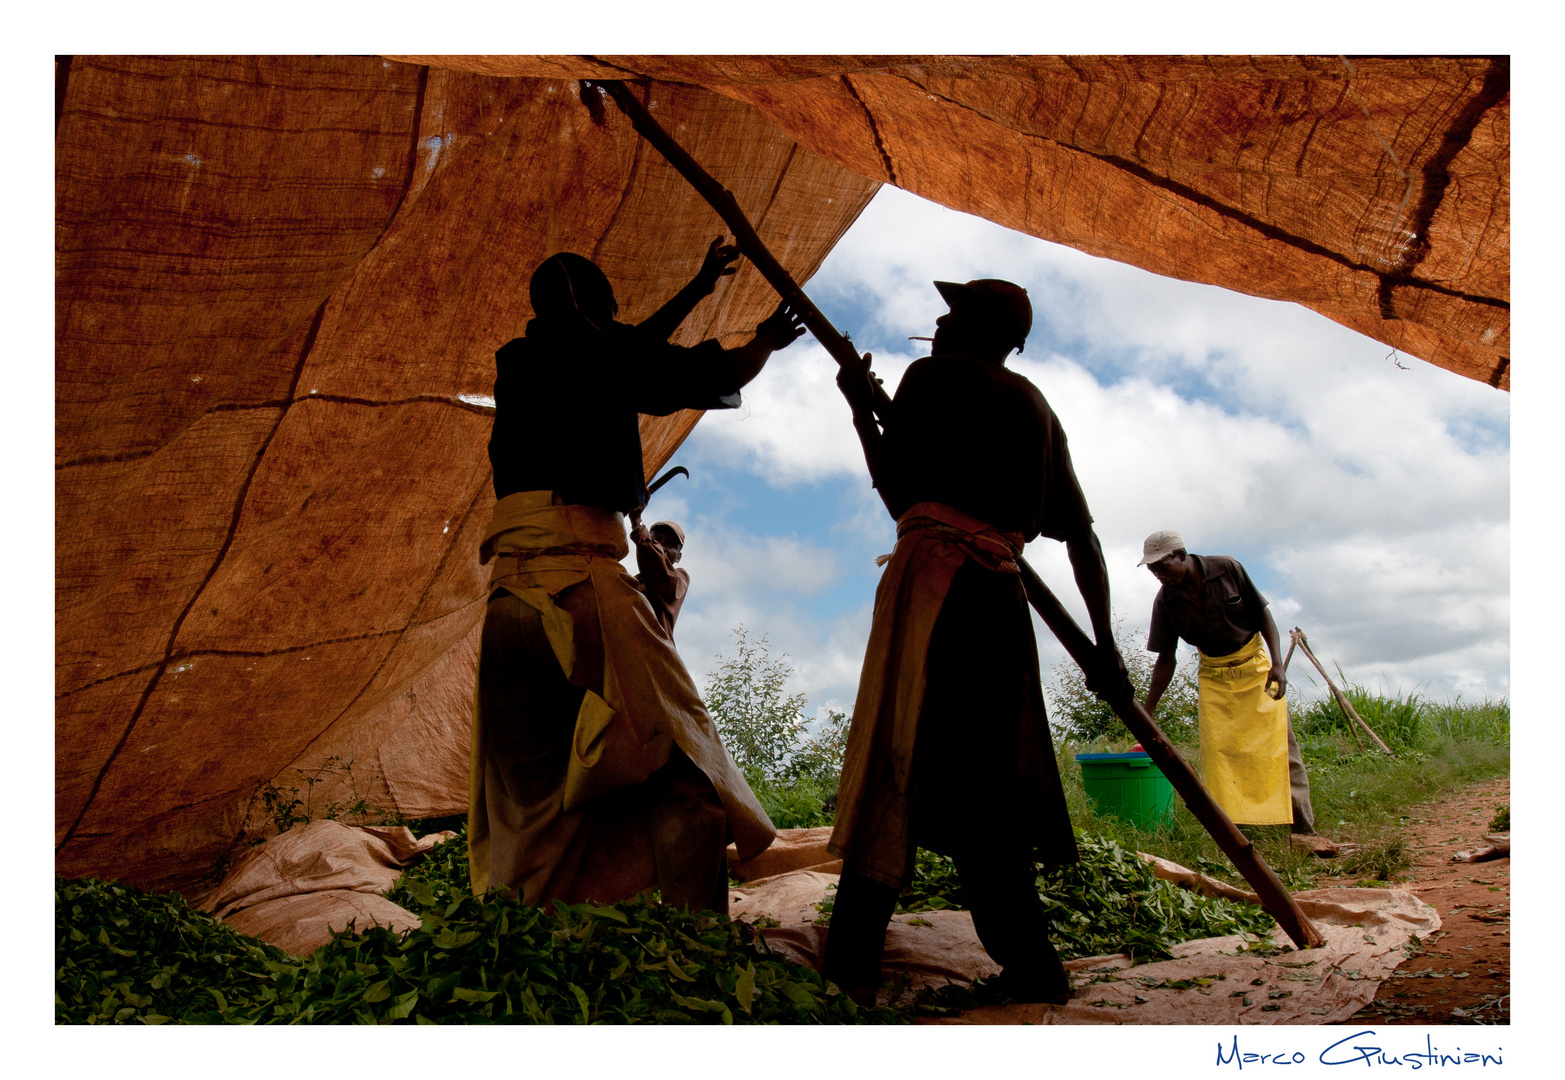 Mostra online di Marco Giustiniani "Malawi, sulle colline del tè" - 4. Al riparo...